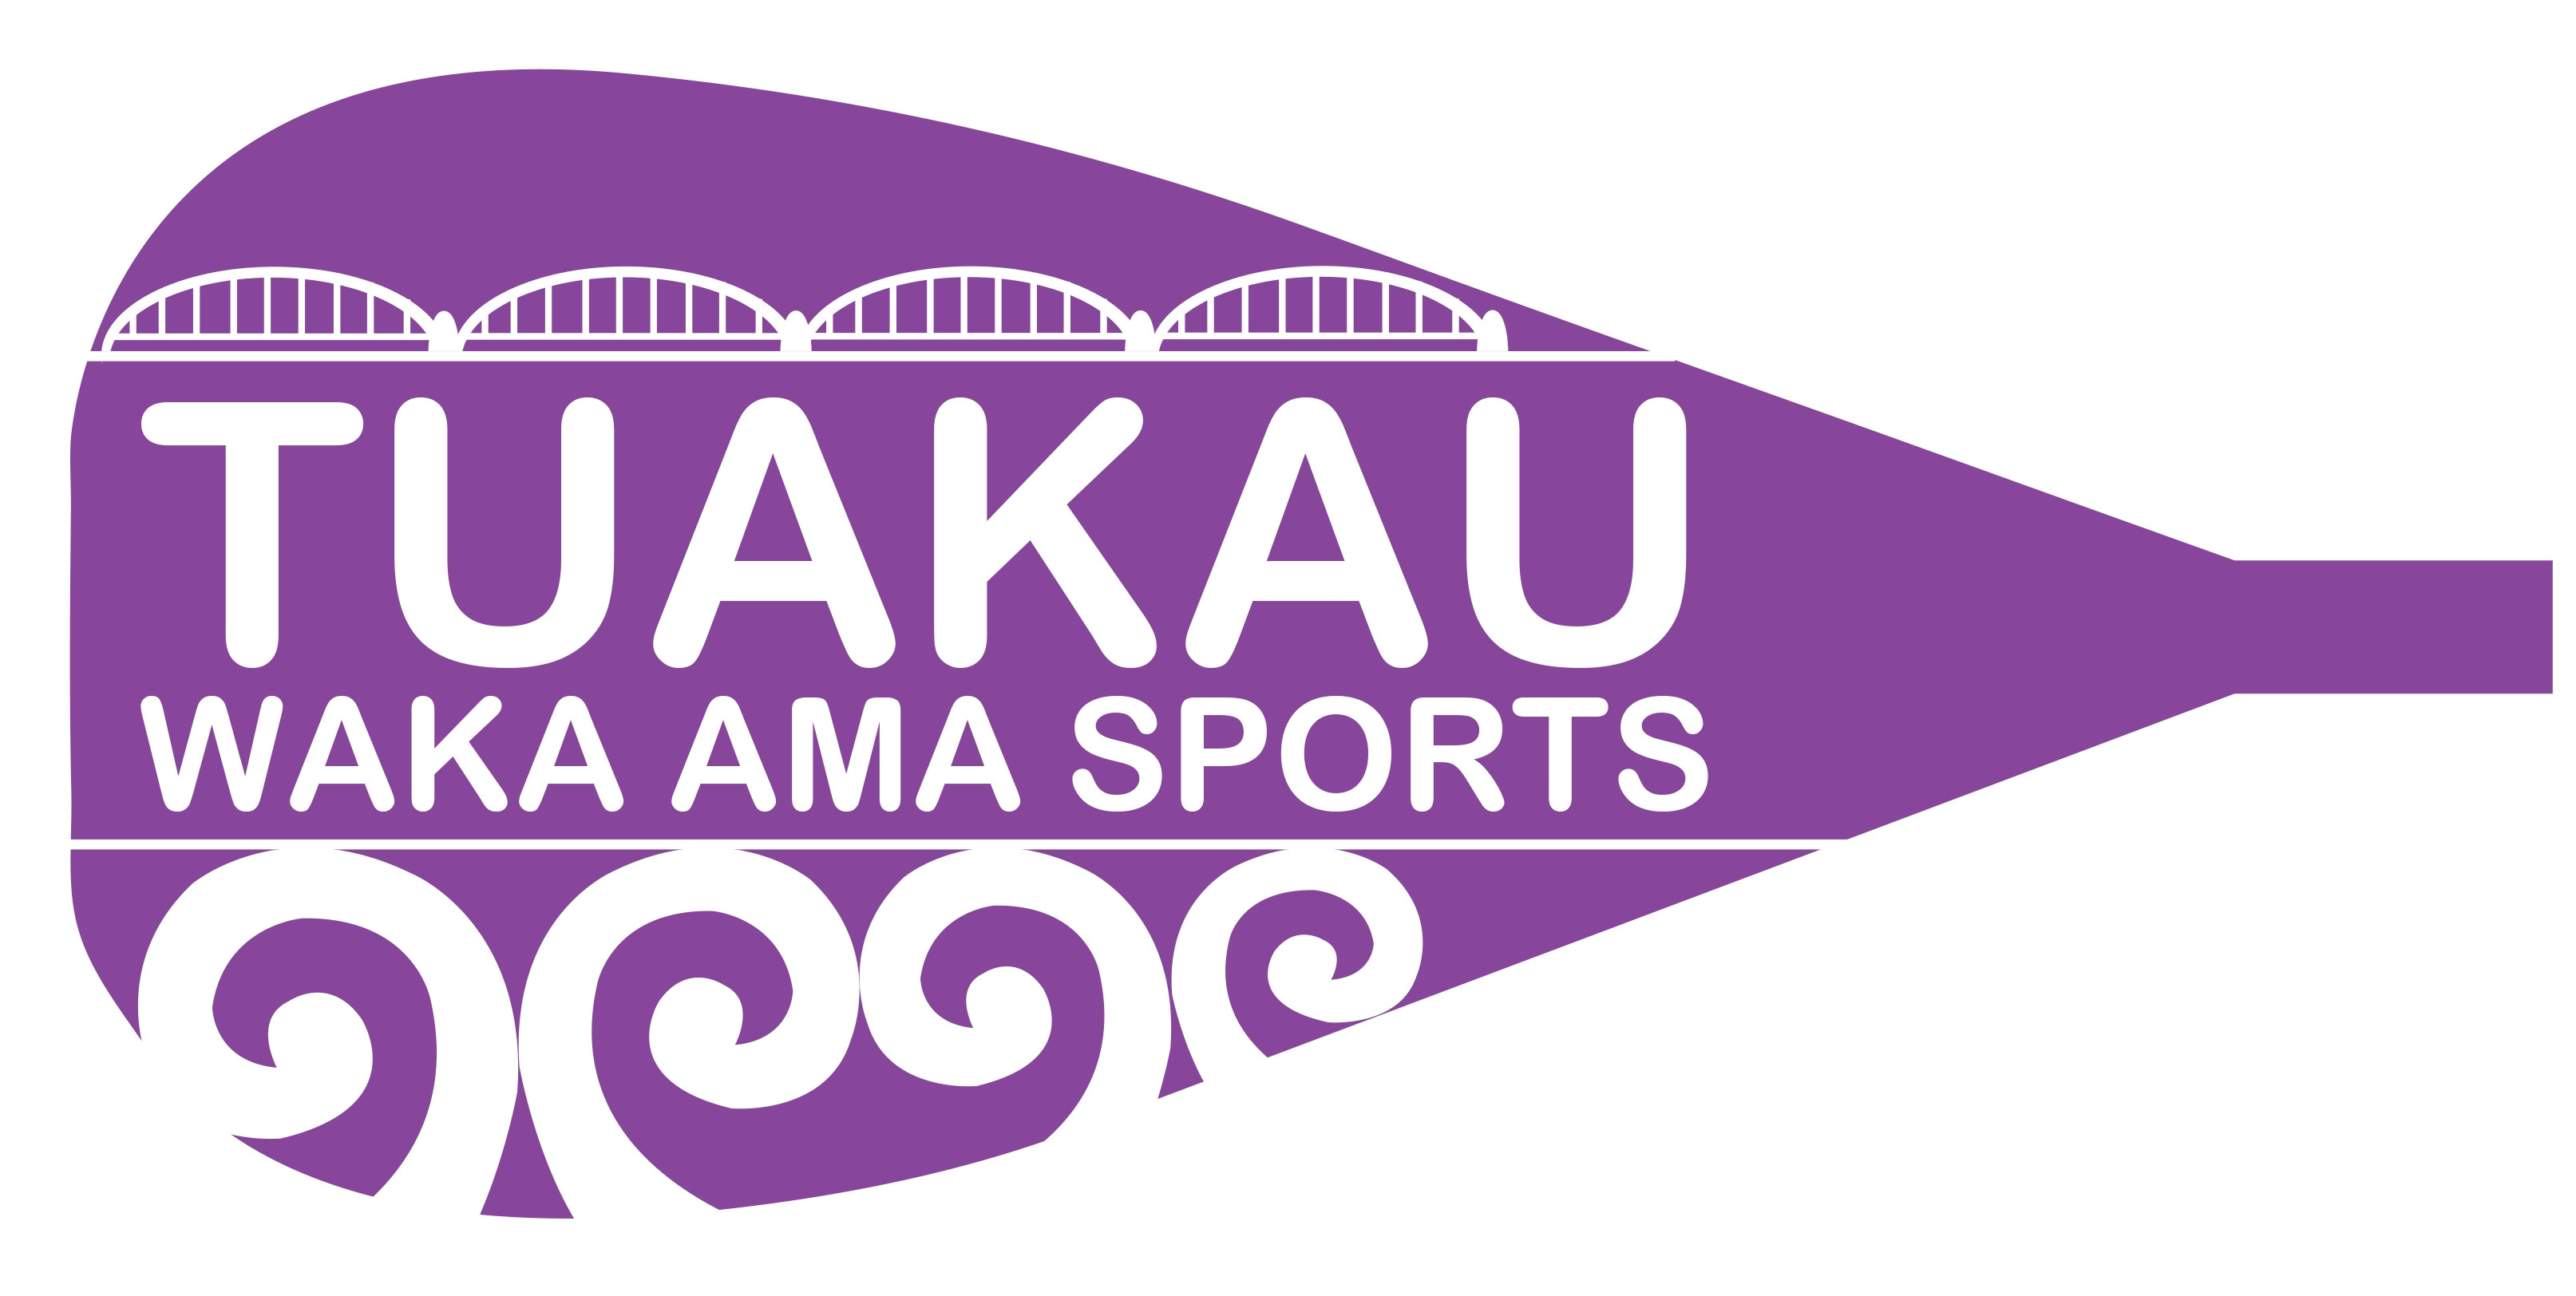 Tuakau Waka Ama Sports Inc